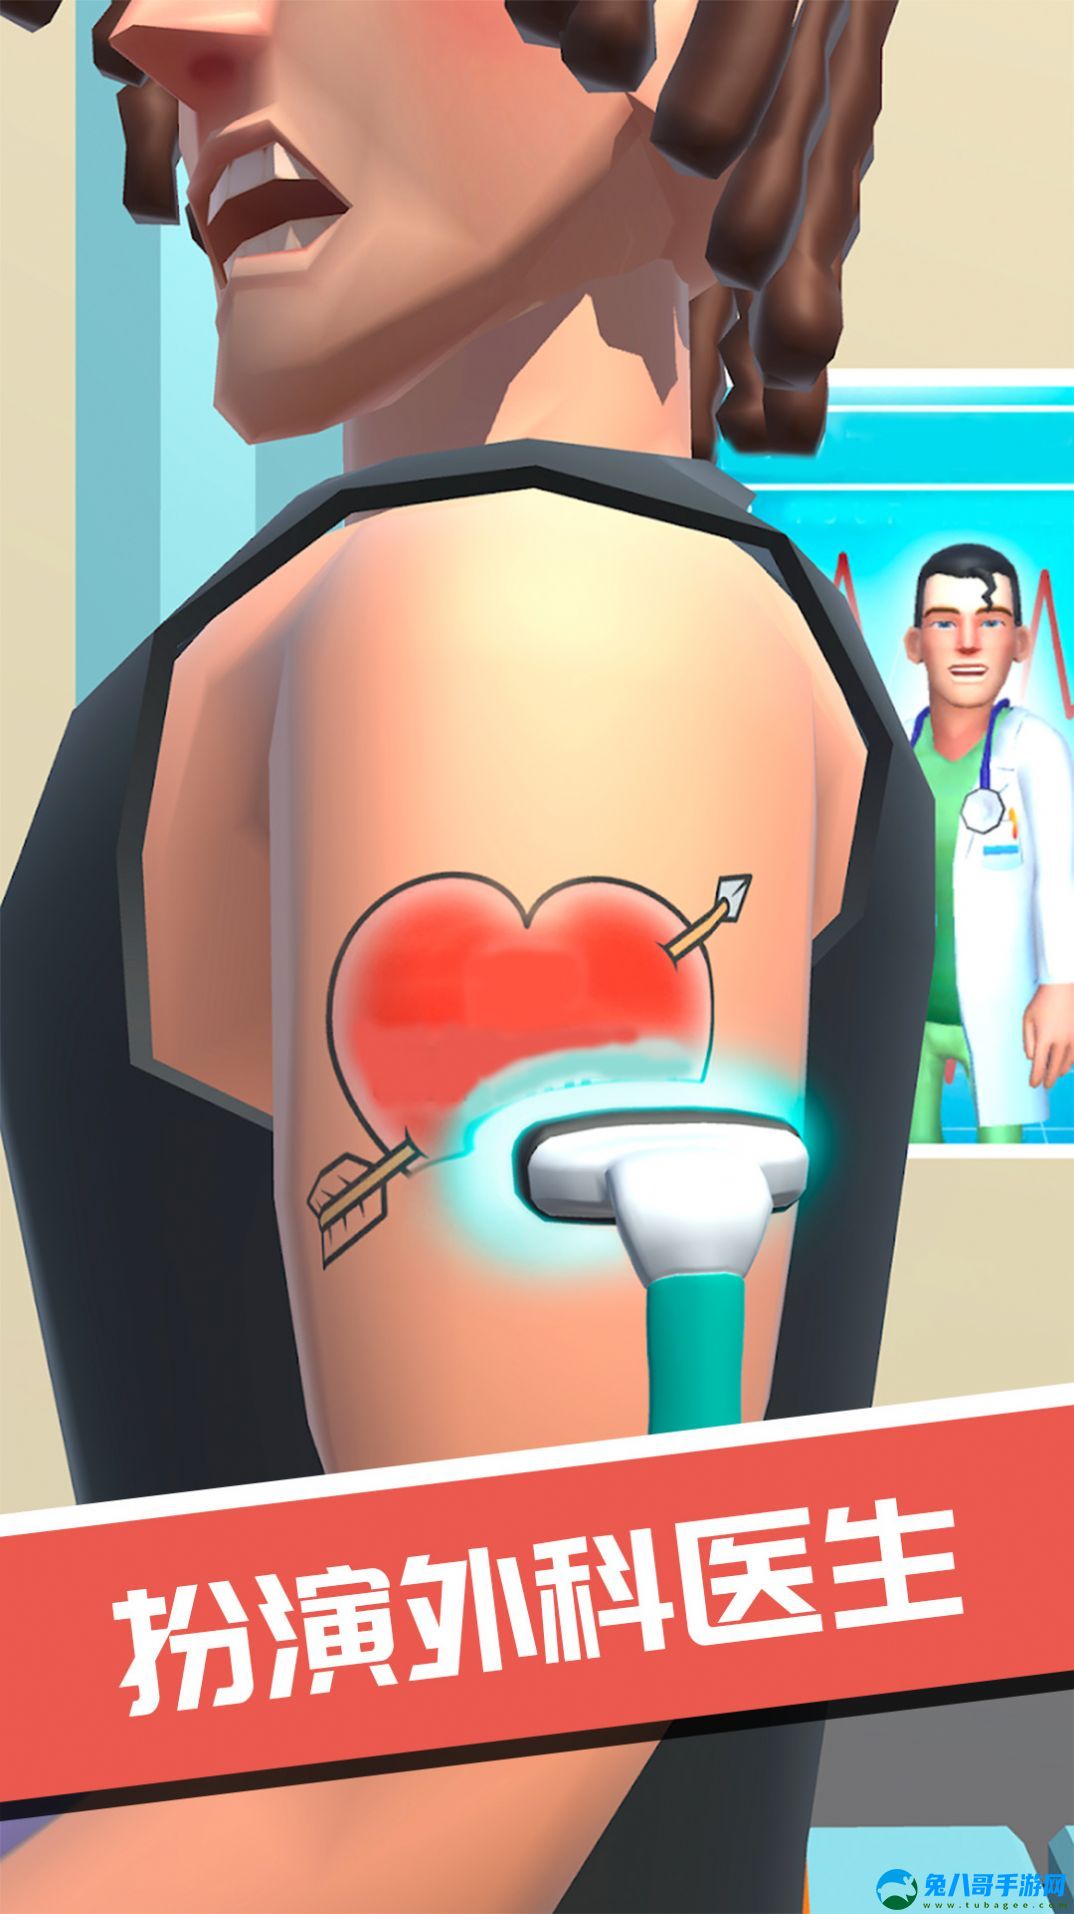 模拟外科医生游戏手机版下载 v300.1.0.3018